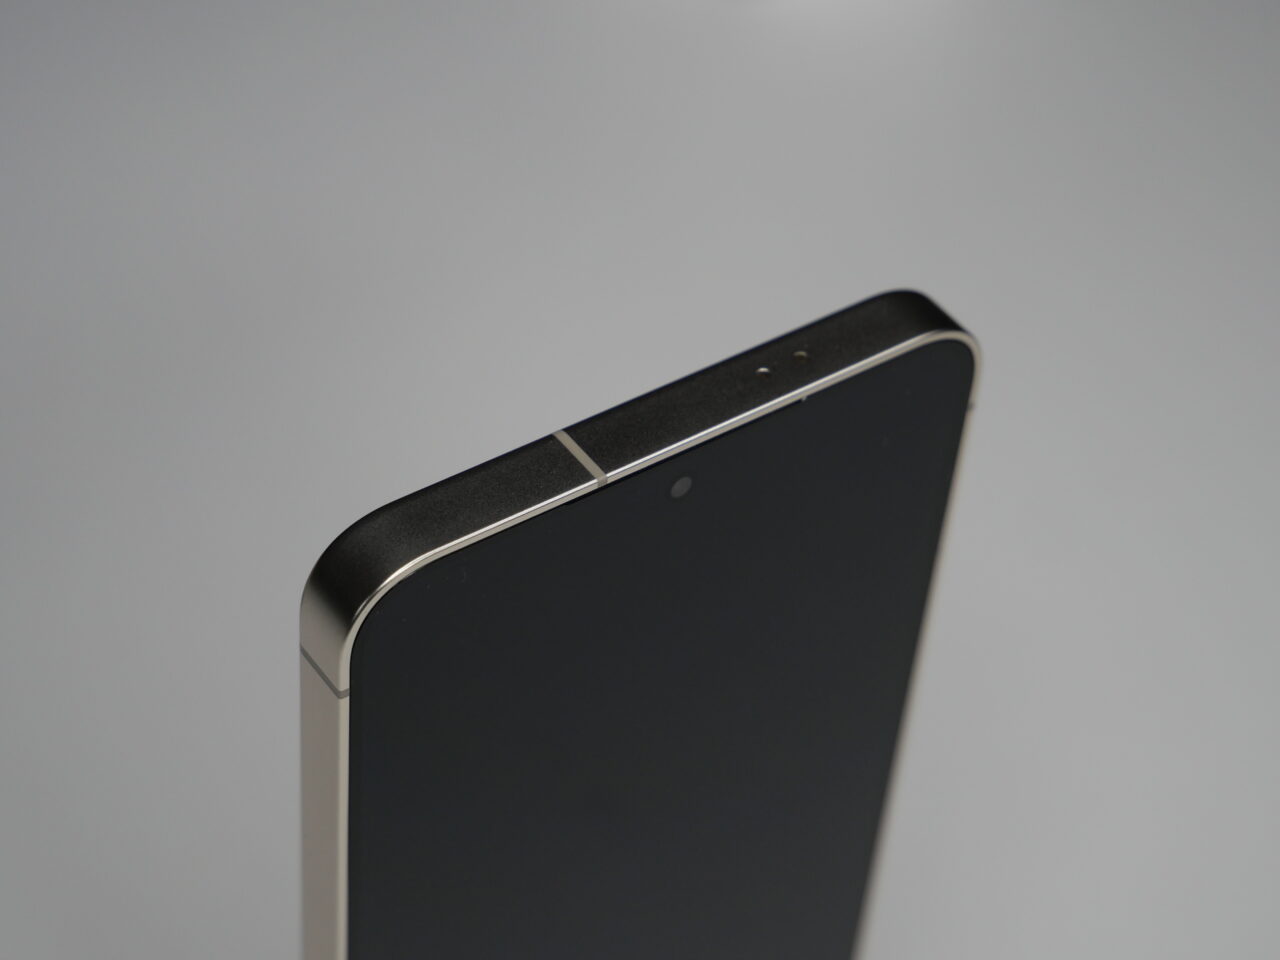 Zbliżenie na górny fragment czarnego smartfona z widocznym aparatem i głośnikiem na metalowej obudowie.